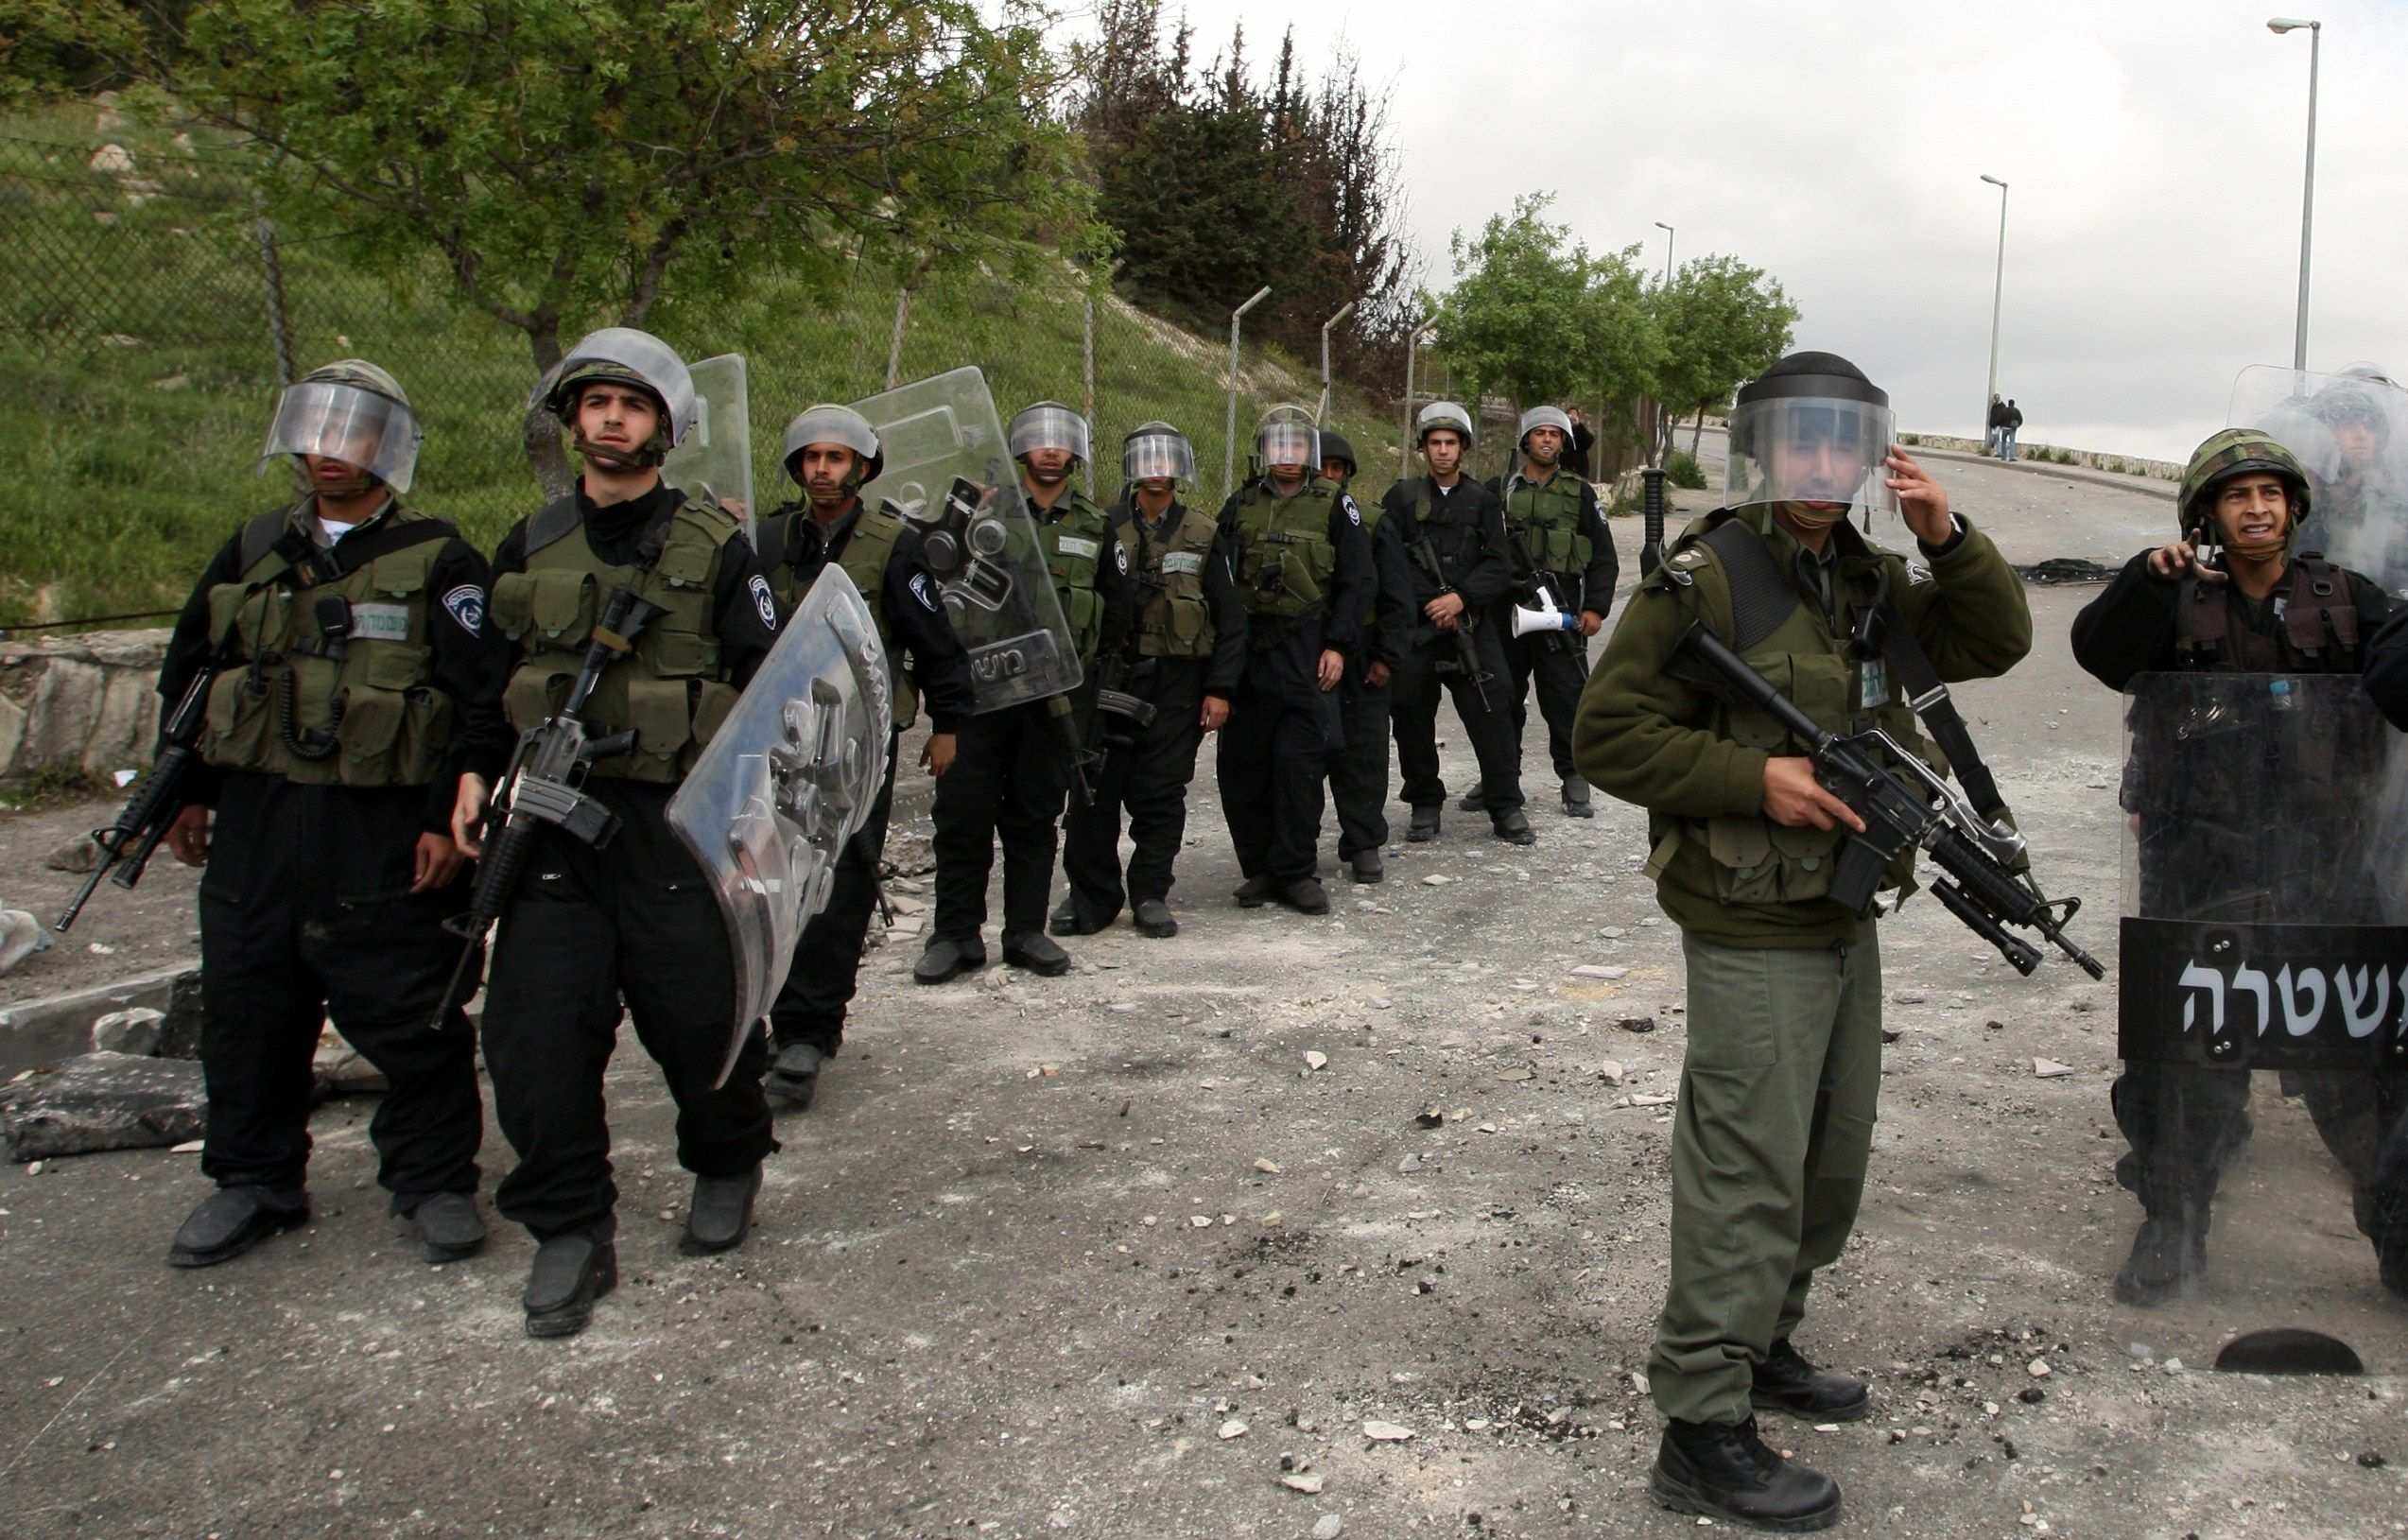 الاتحاد الأوروبي يدعو إسرائيل إلى عدم اللجوء إلى استخدام القوة المميتة إلّا "كملاذ أخير"